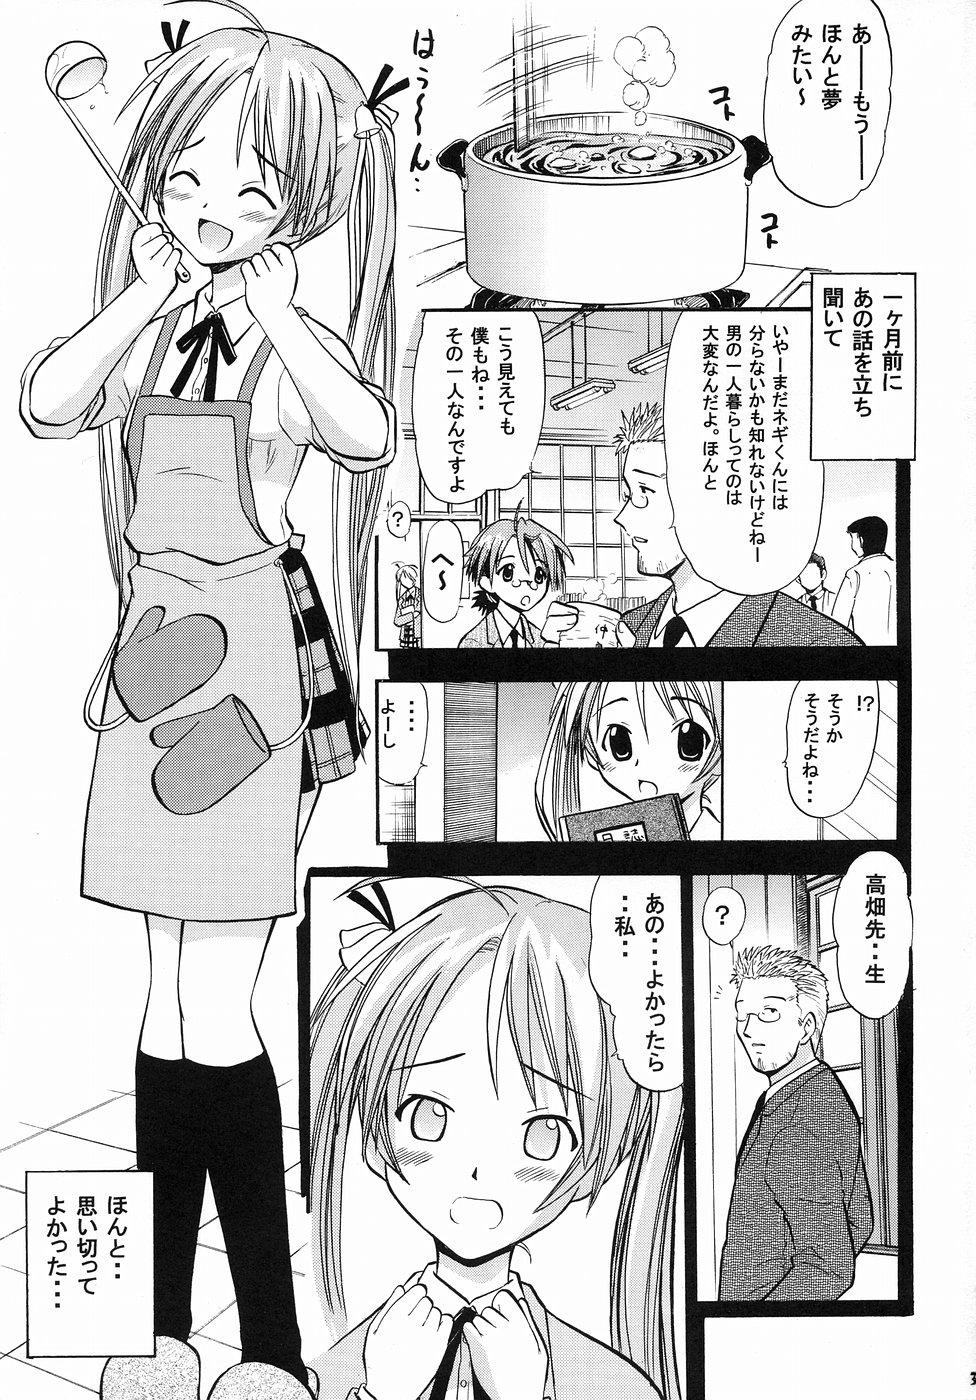 Relax Asuna no Koi Suru Heart - Mahou sensei negima Tributo - Page 2